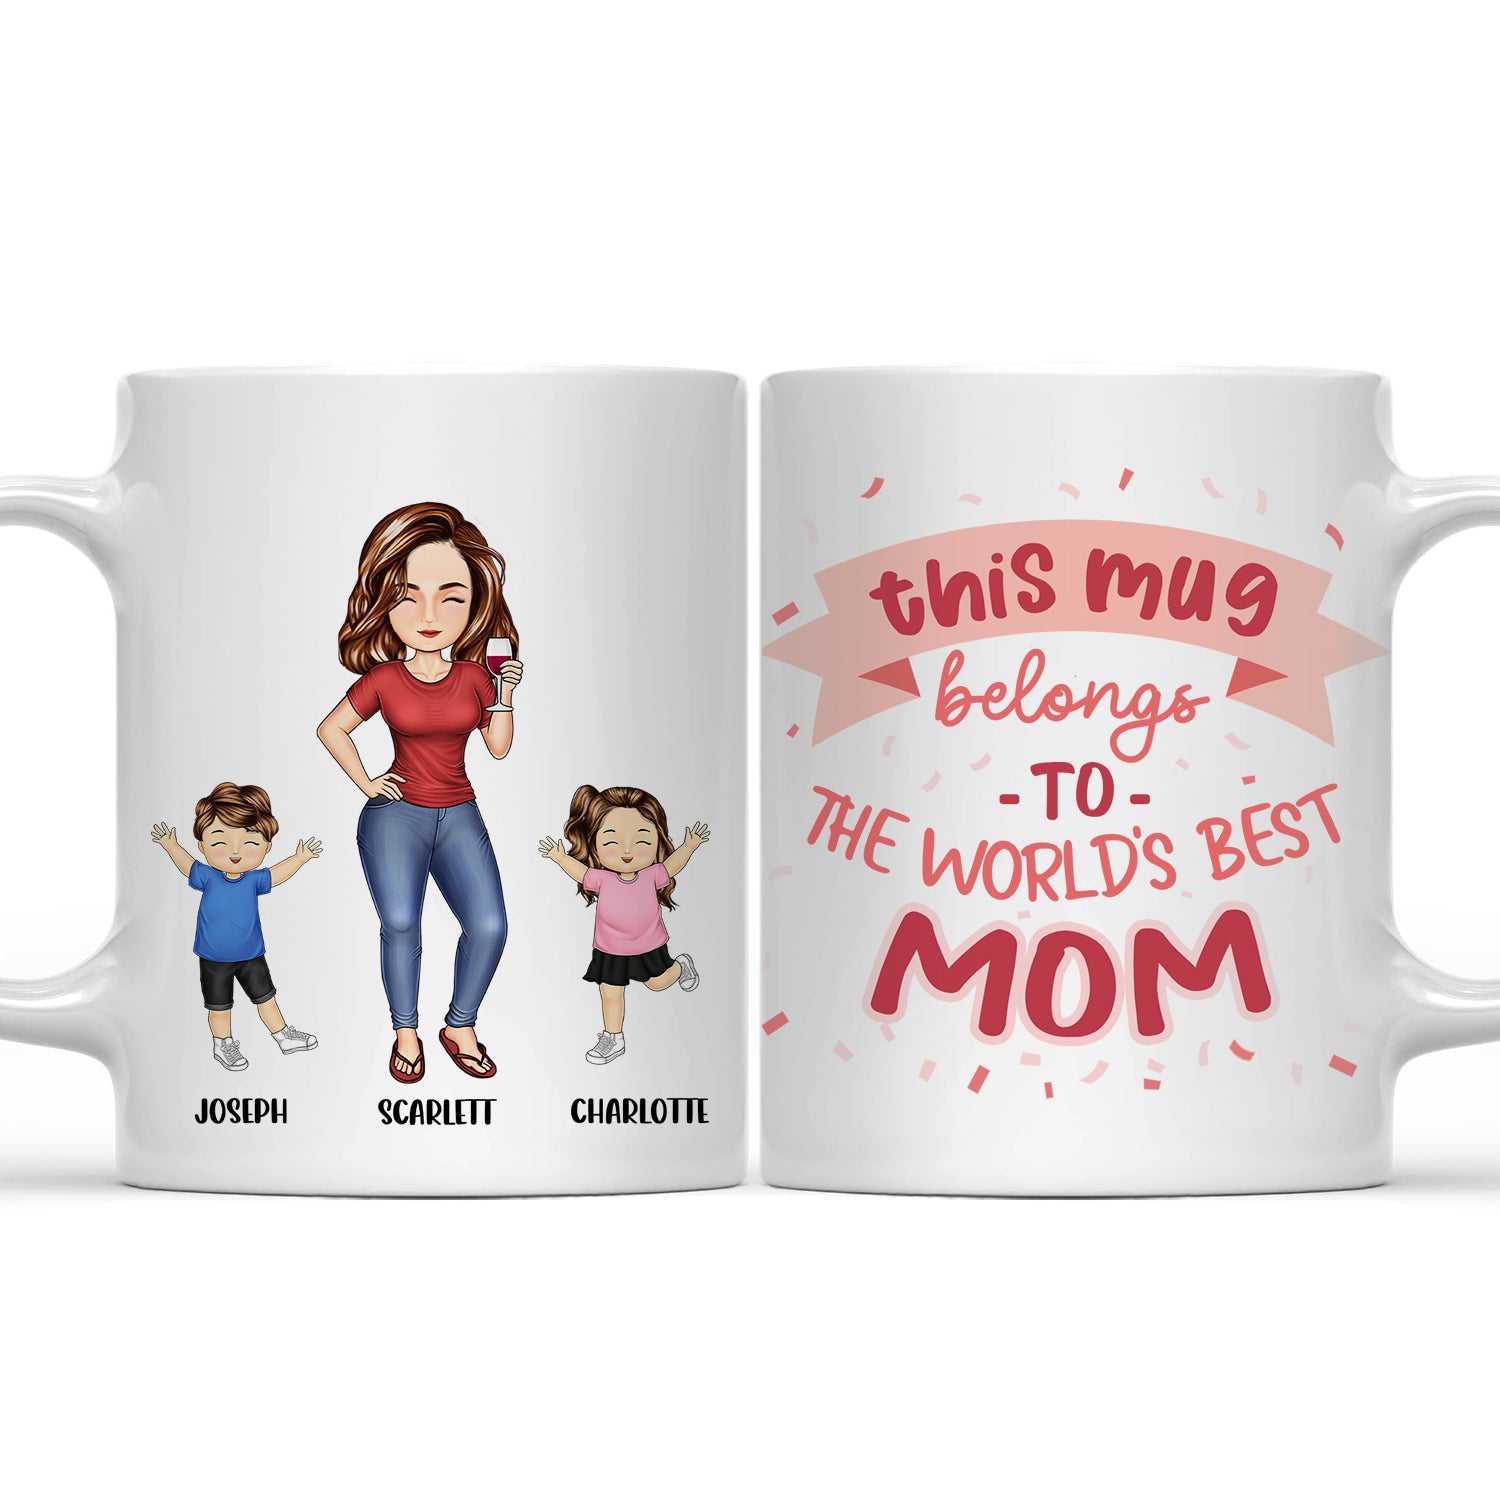 This Mug Belongs To - Gift For Mom, Mother, Grandma, Grandmother - Personalized Mug